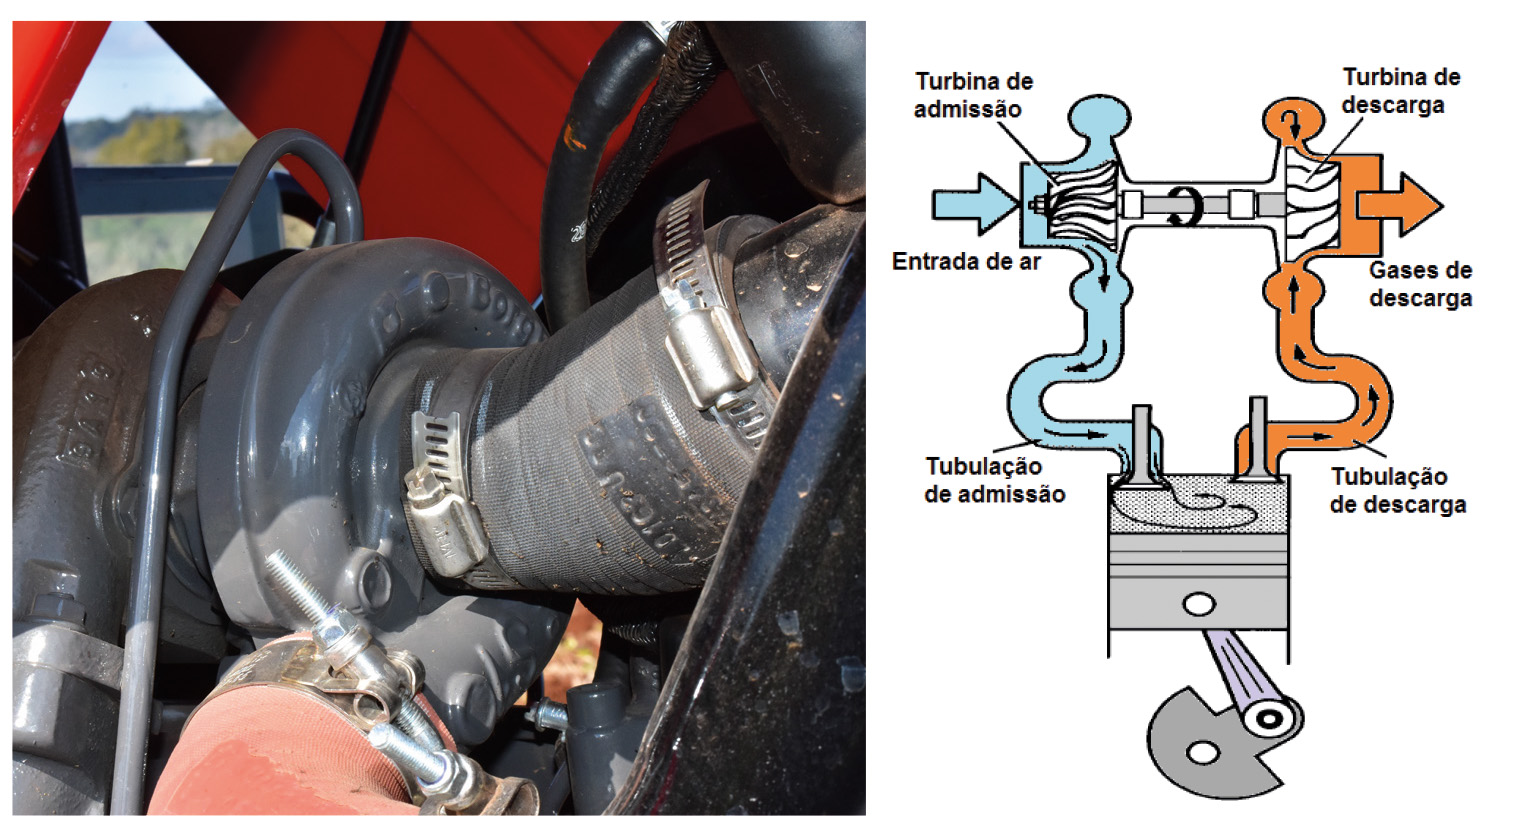 Como funciona o motor a diesel e suas vantagens - Revista Cultivar